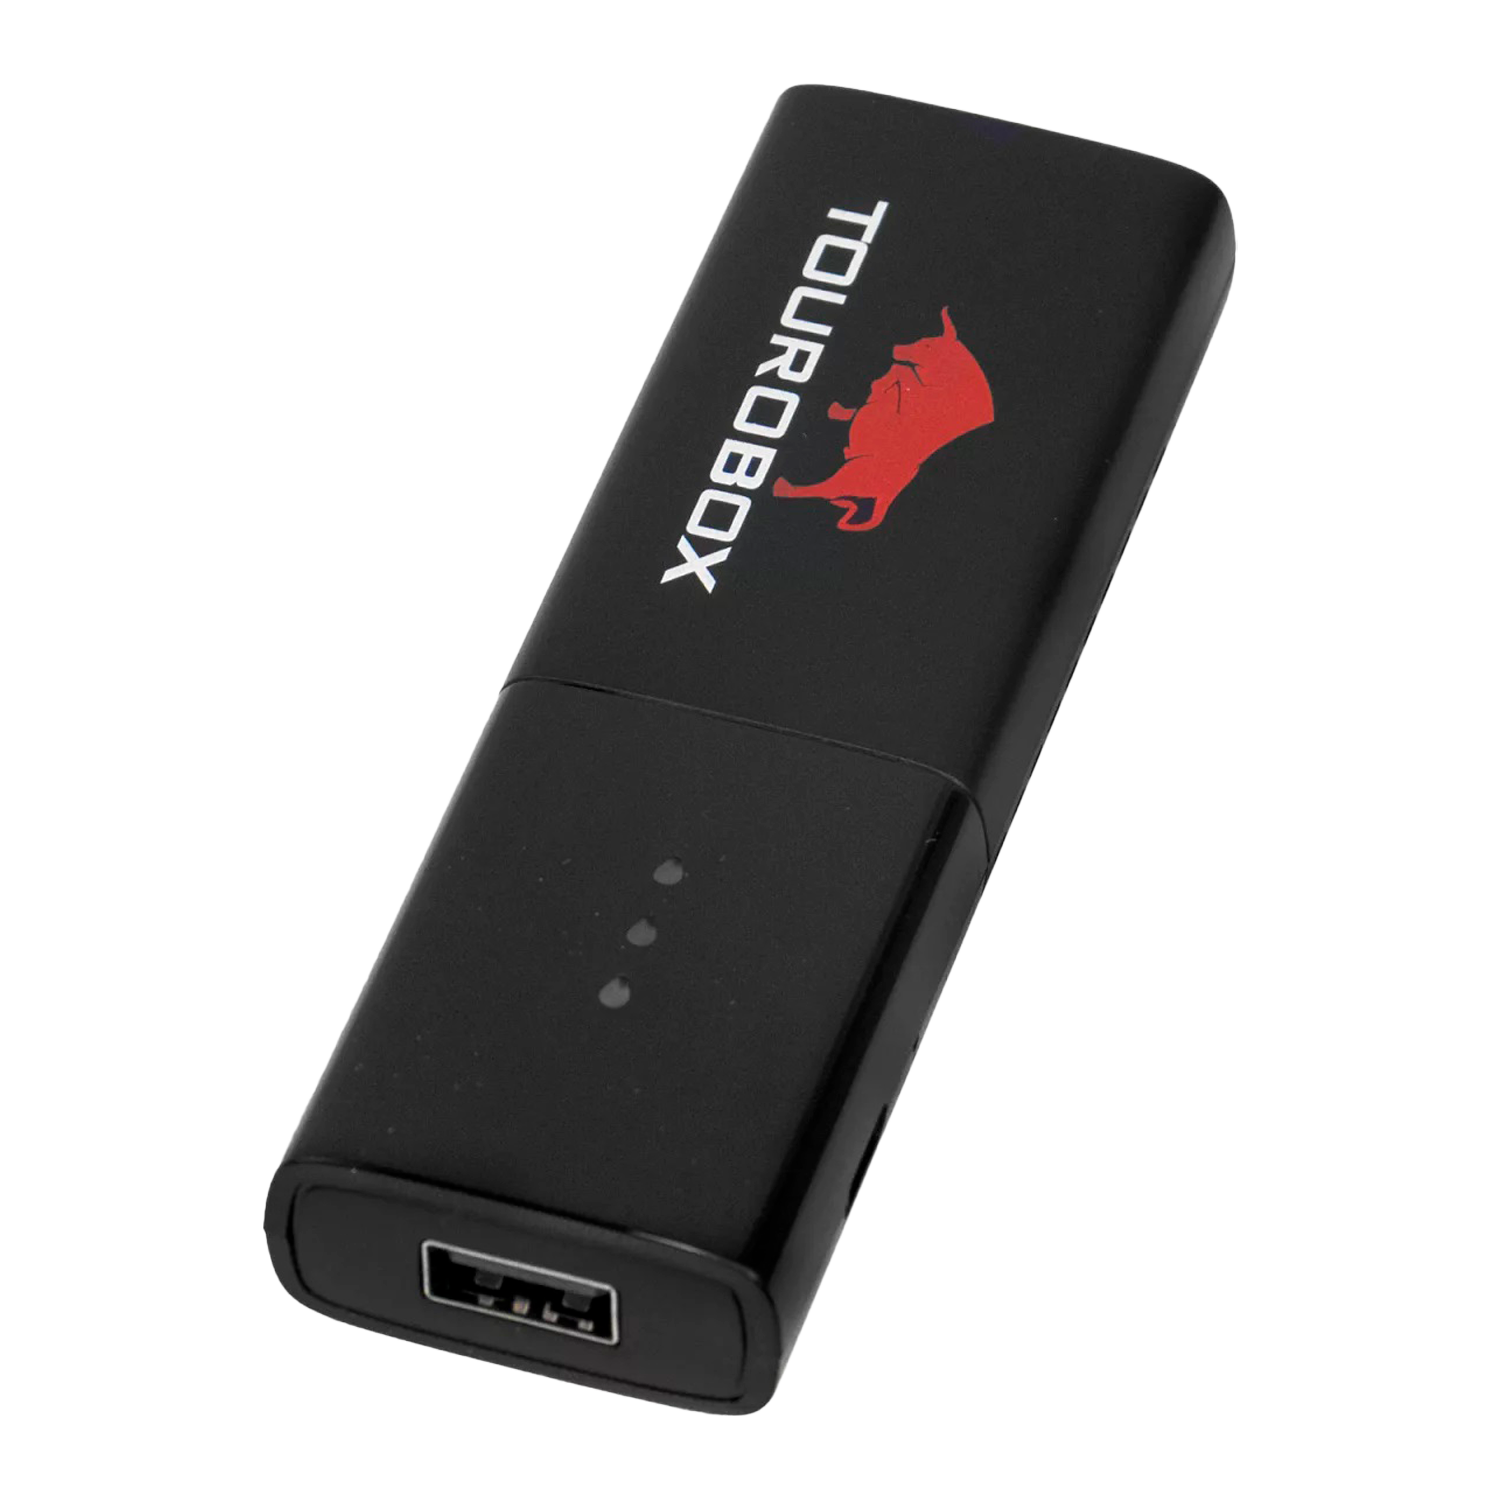 Receptor Tourobox Stick 4K 8GB 1GB RAM Wi-Fi - Preto